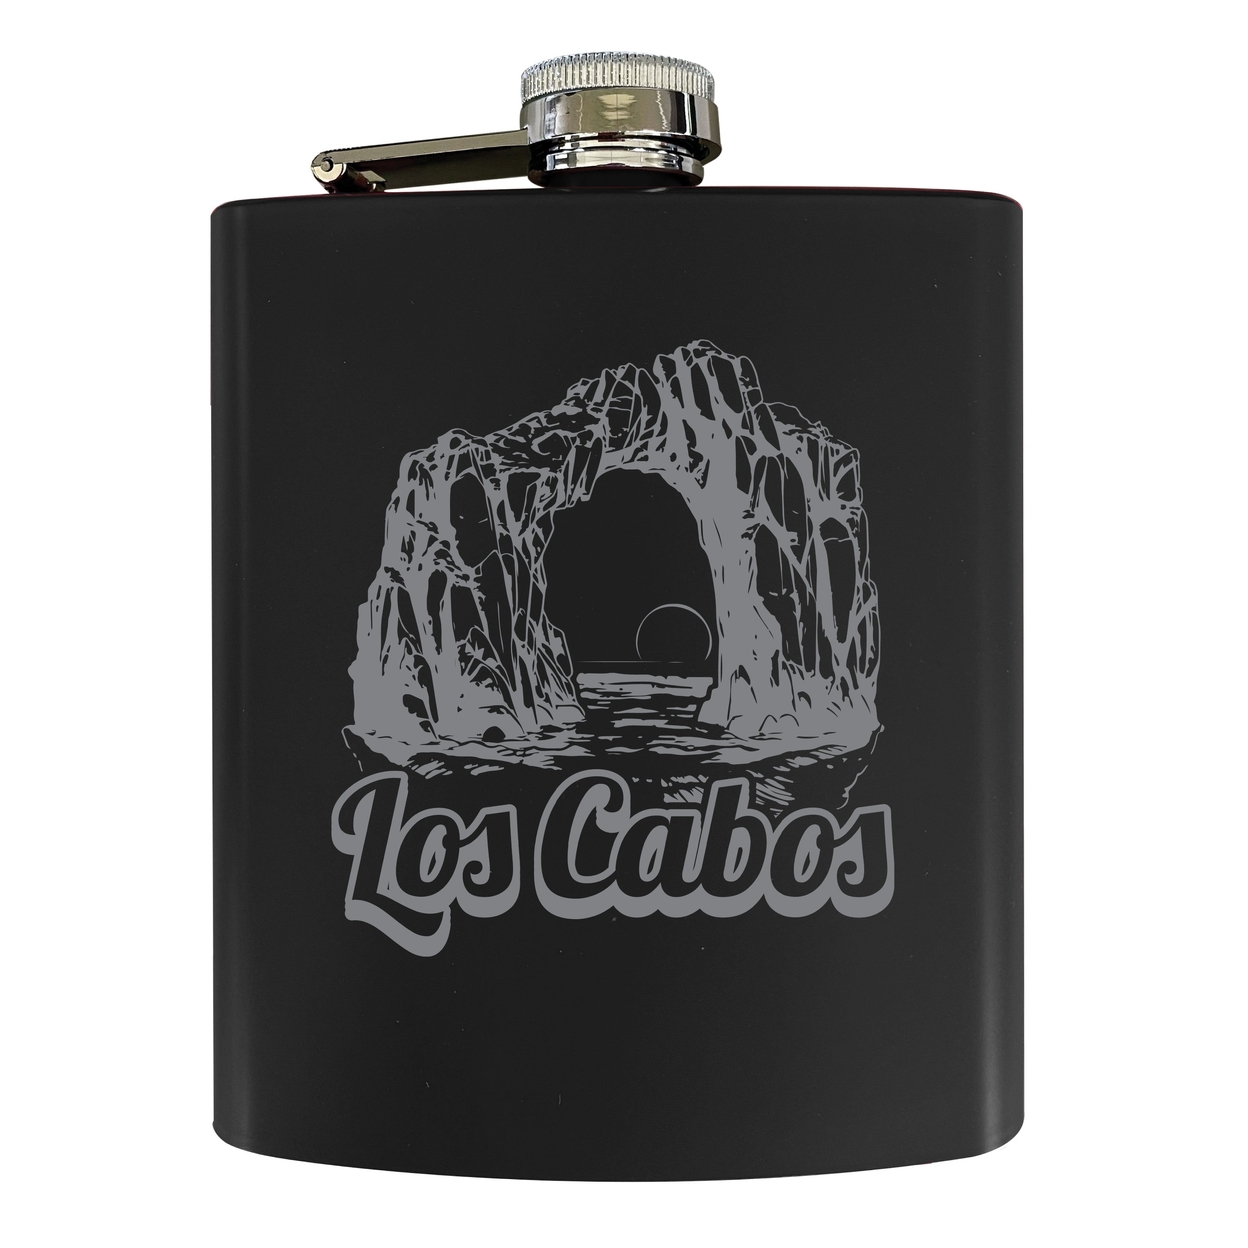 Los Cabos Mexico Souvenir 7 Oz Engraved Steel Flask Matte Finish - Seafoam,,Single Unit